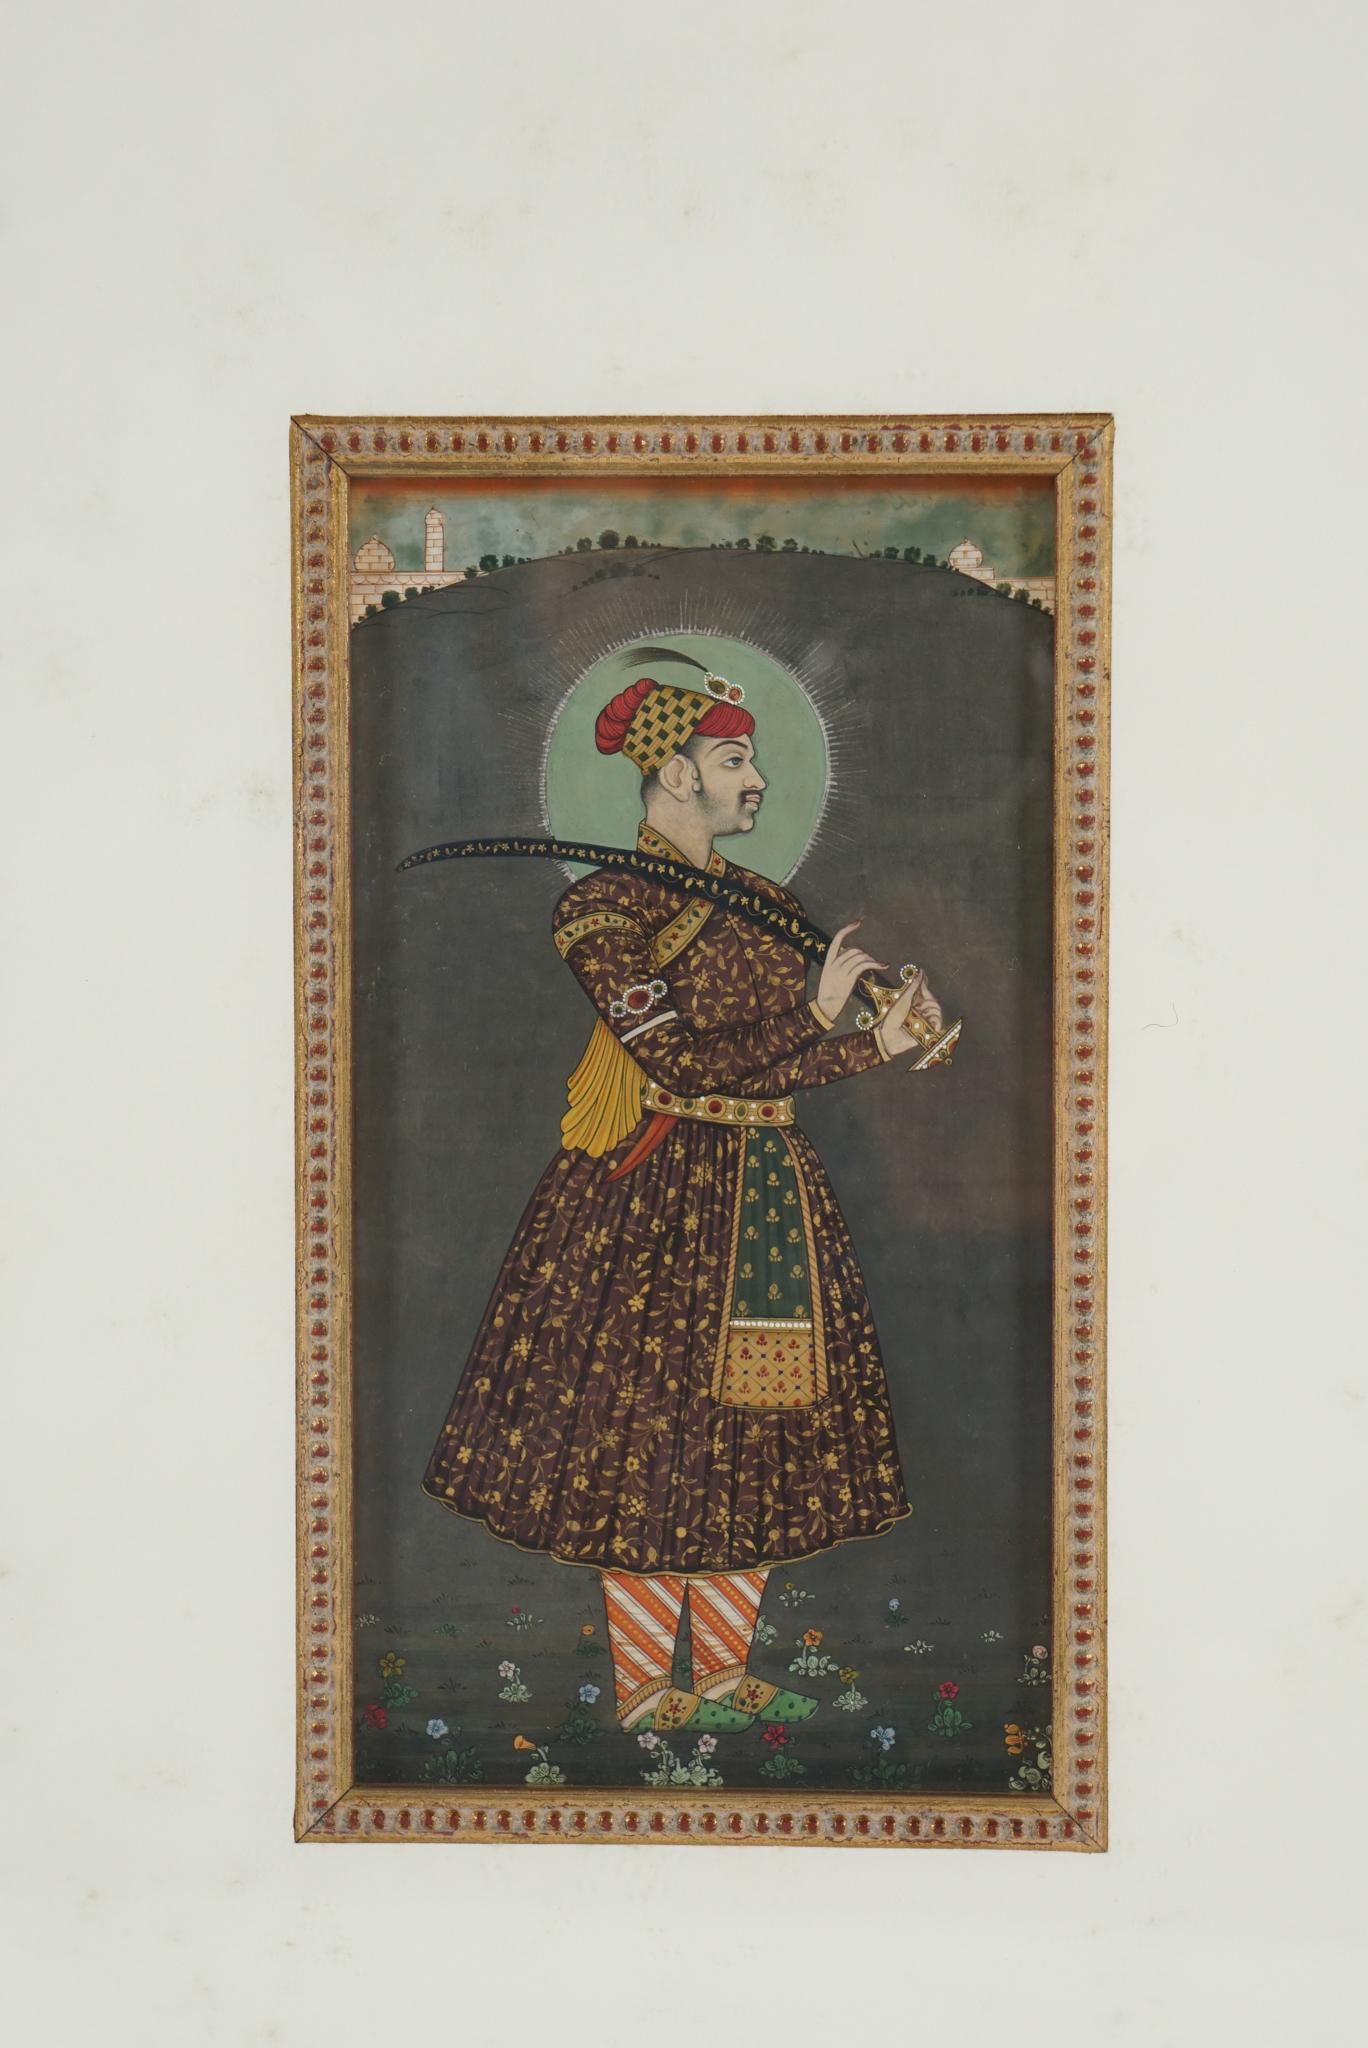 Cette miniature très détaillée, conçue pour être insérée dans un album d'œuvres pour une exposition privée, représente le grand empereur moghol Shah Jahan et a été peinte vers 1780. Né au sein de la grande dynastie qui régnait sur l'Inde, descendant